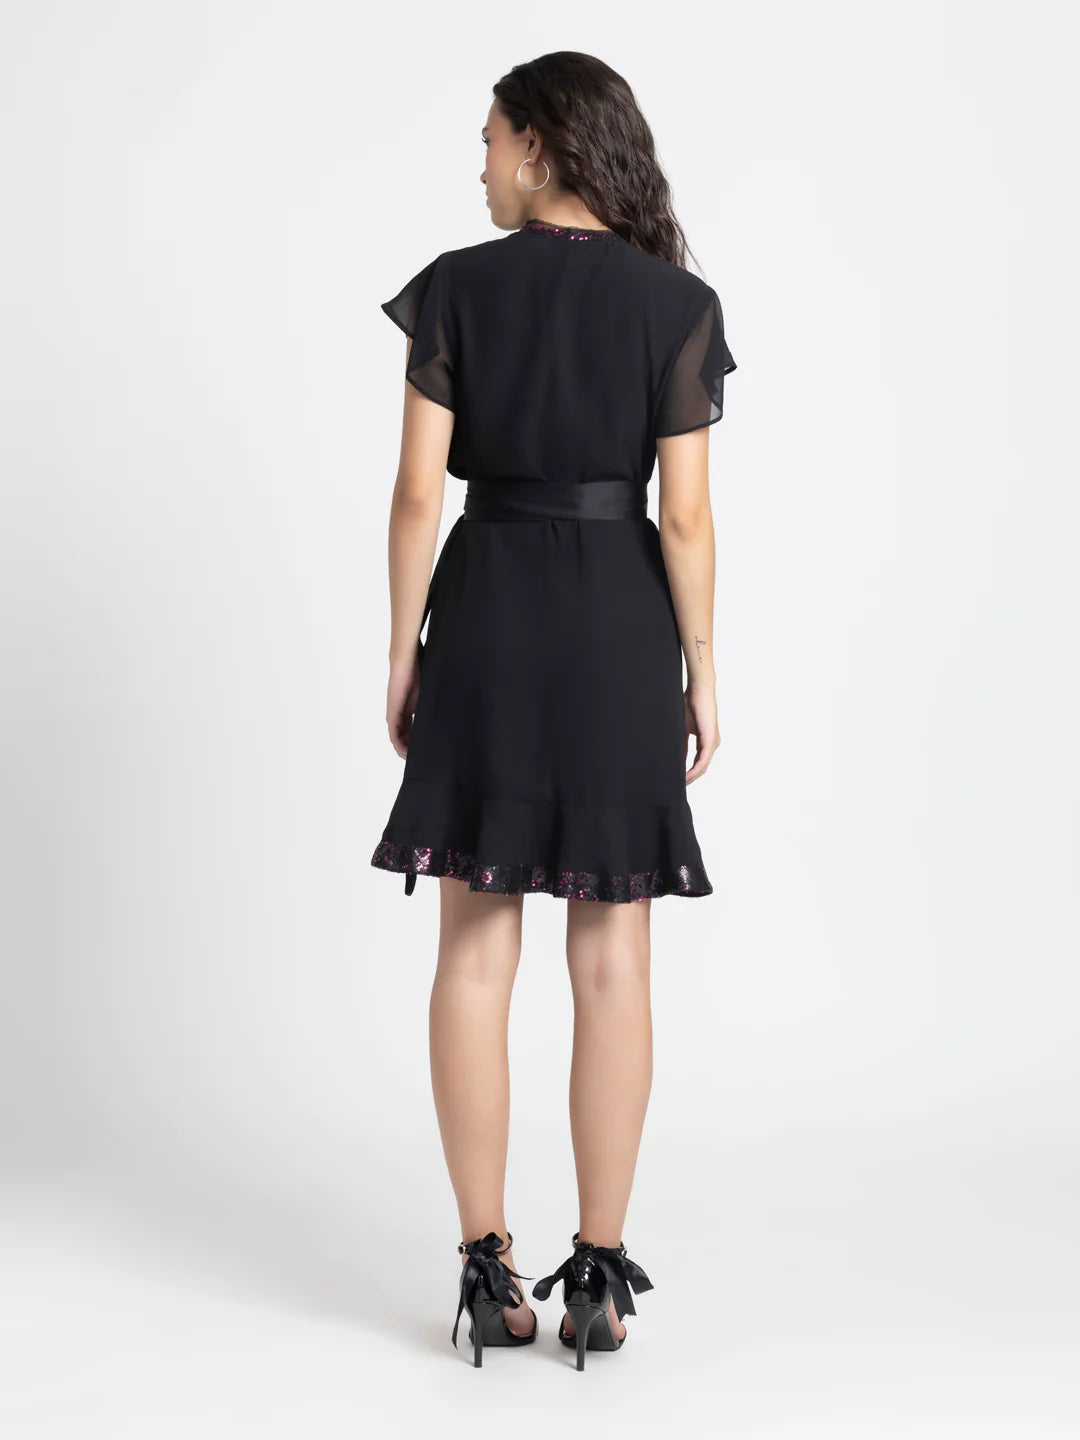 Sequin Wrap Dress | Sequin Elegance Wrap Dress